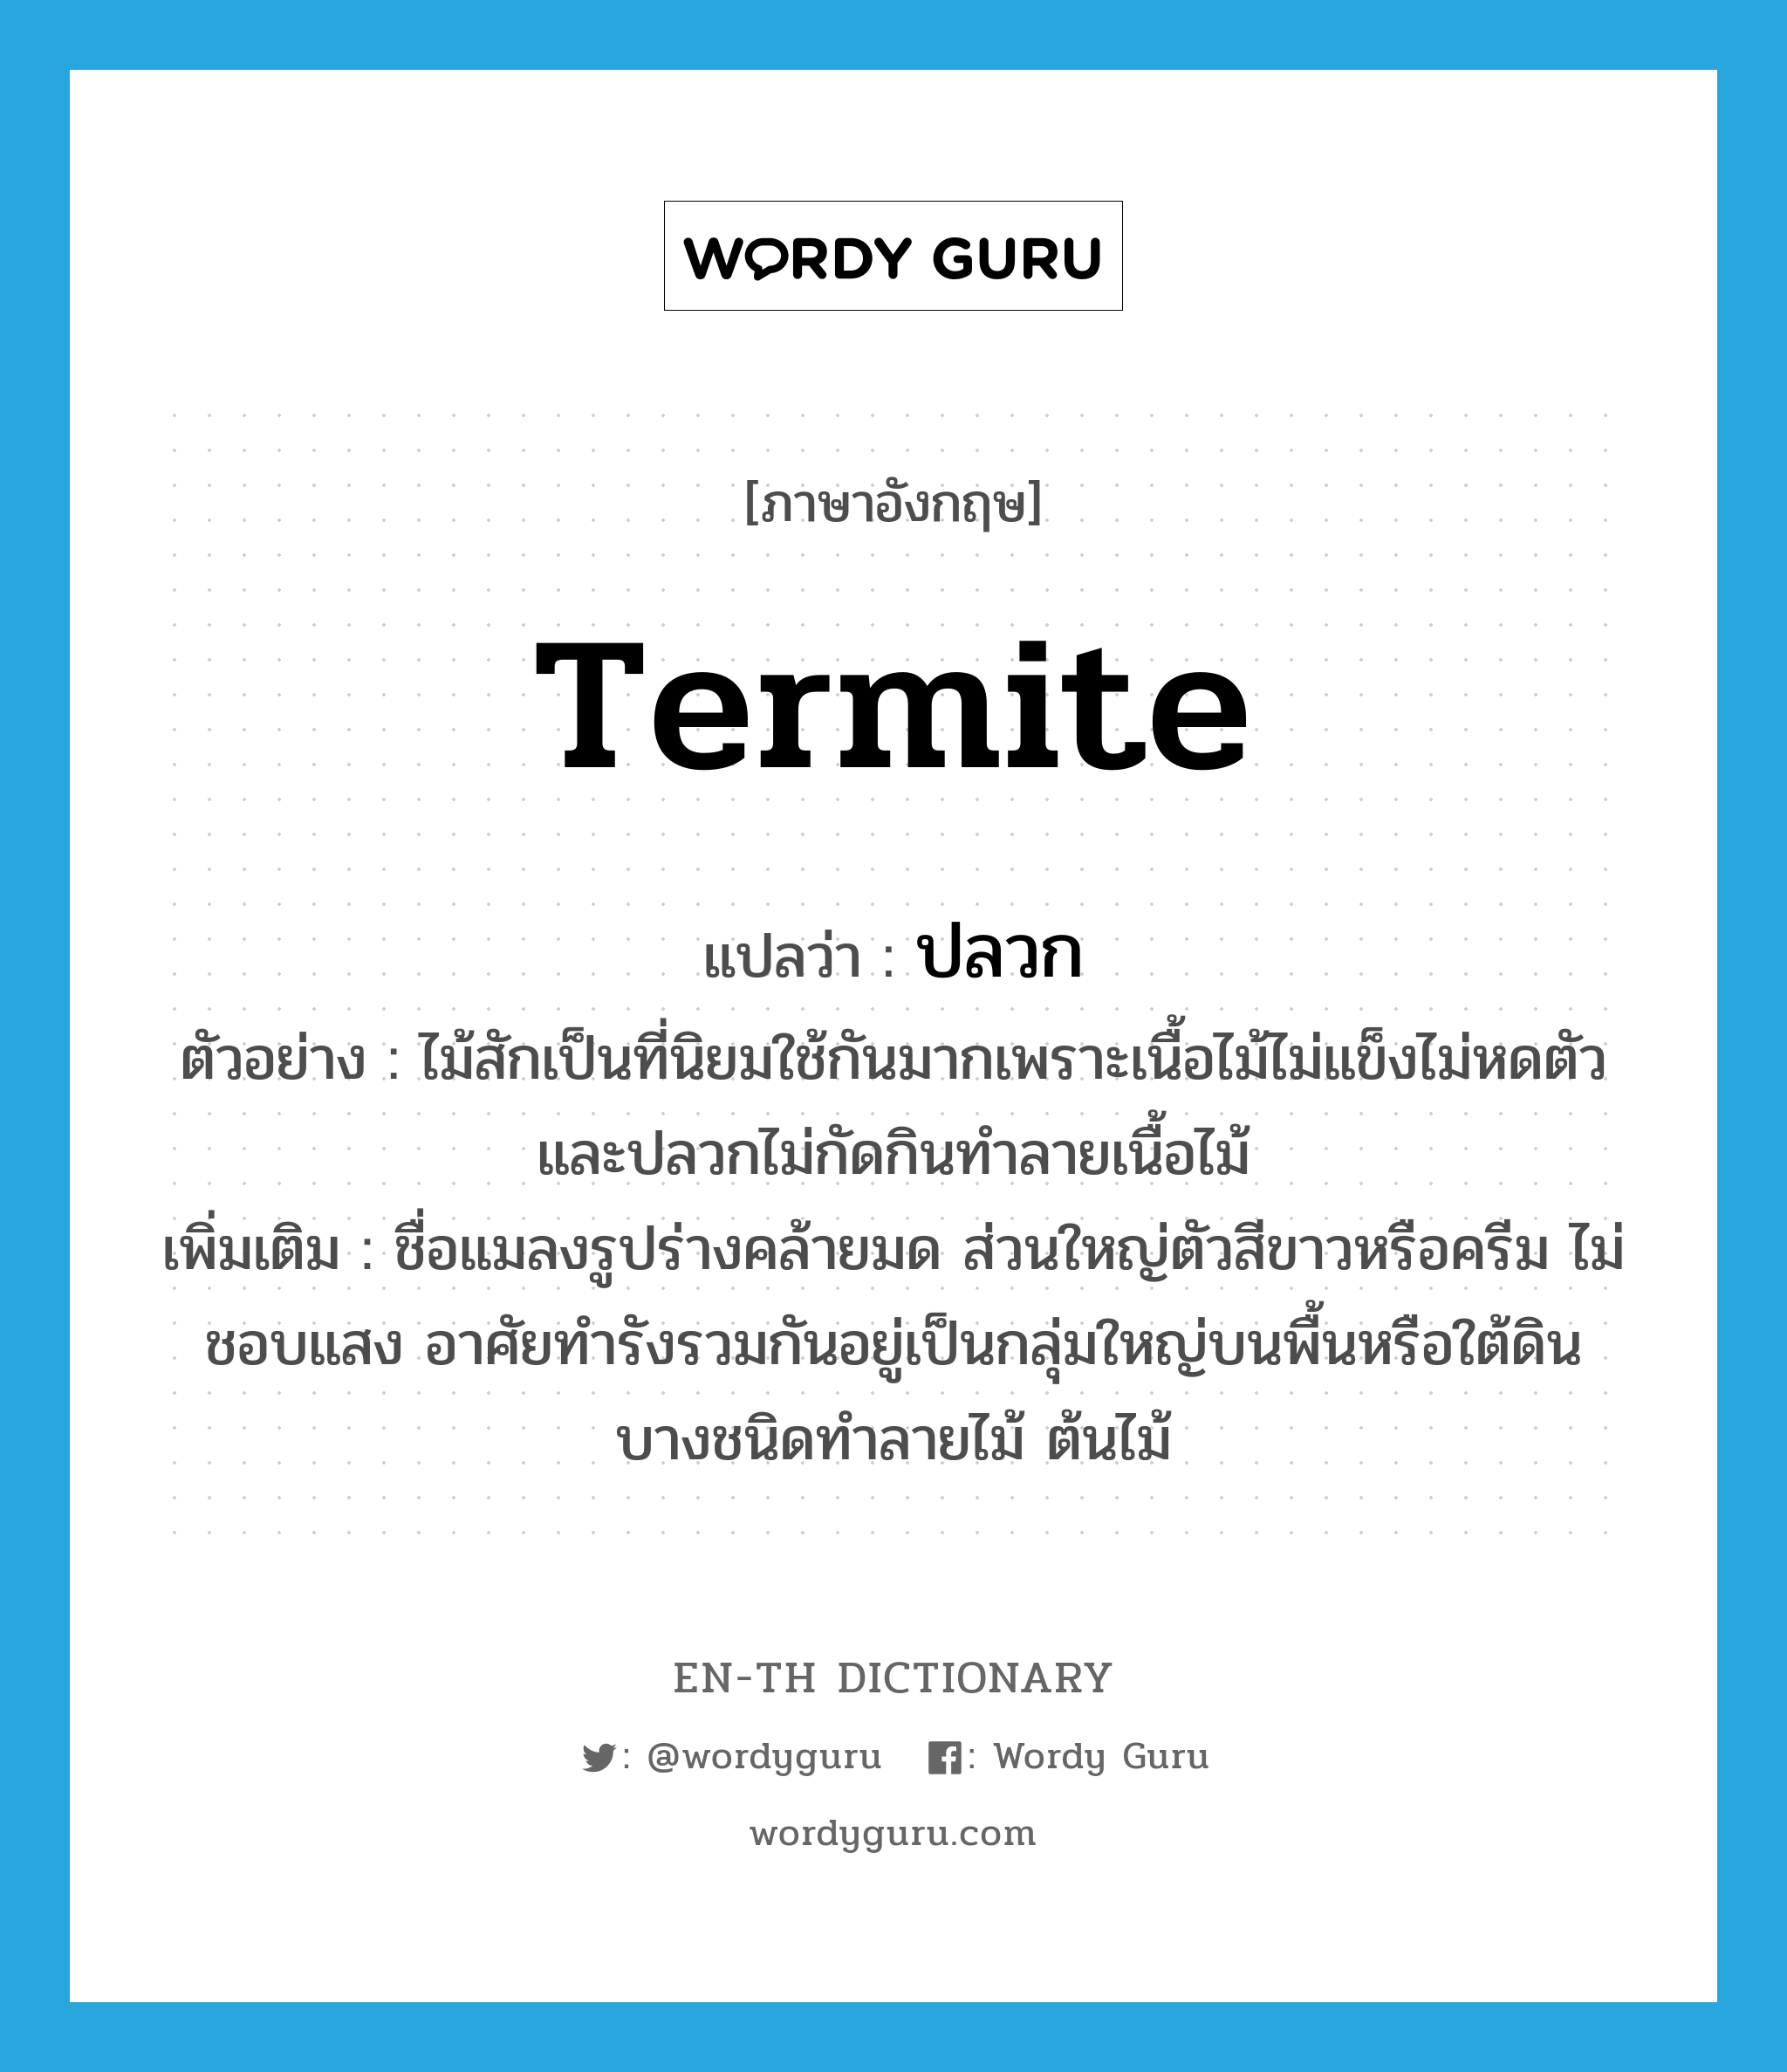 termite แปลว่า?, คำศัพท์ภาษาอังกฤษ termite แปลว่า ปลวก ประเภท N ตัวอย่าง ไม้สักเป็นที่นิยมใช้กันมากเพราะเนื้อไม้ไม่แข็งไม่หดตัวและปลวกไม่กัดกินทำลายเนื้อไม้ เพิ่มเติม ชื่อแมลงรูปร่างคล้ายมด ส่วนใหญ่ตัวสีขาวหรือครีม ไม่ชอบแสง อาศัยทำรังรวมกันอยู่เป็นกลุ่มใหญ่บนพื้นหรือใต้ดิน บางชนิดทำลายไม้ ต้นไม้ หมวด N